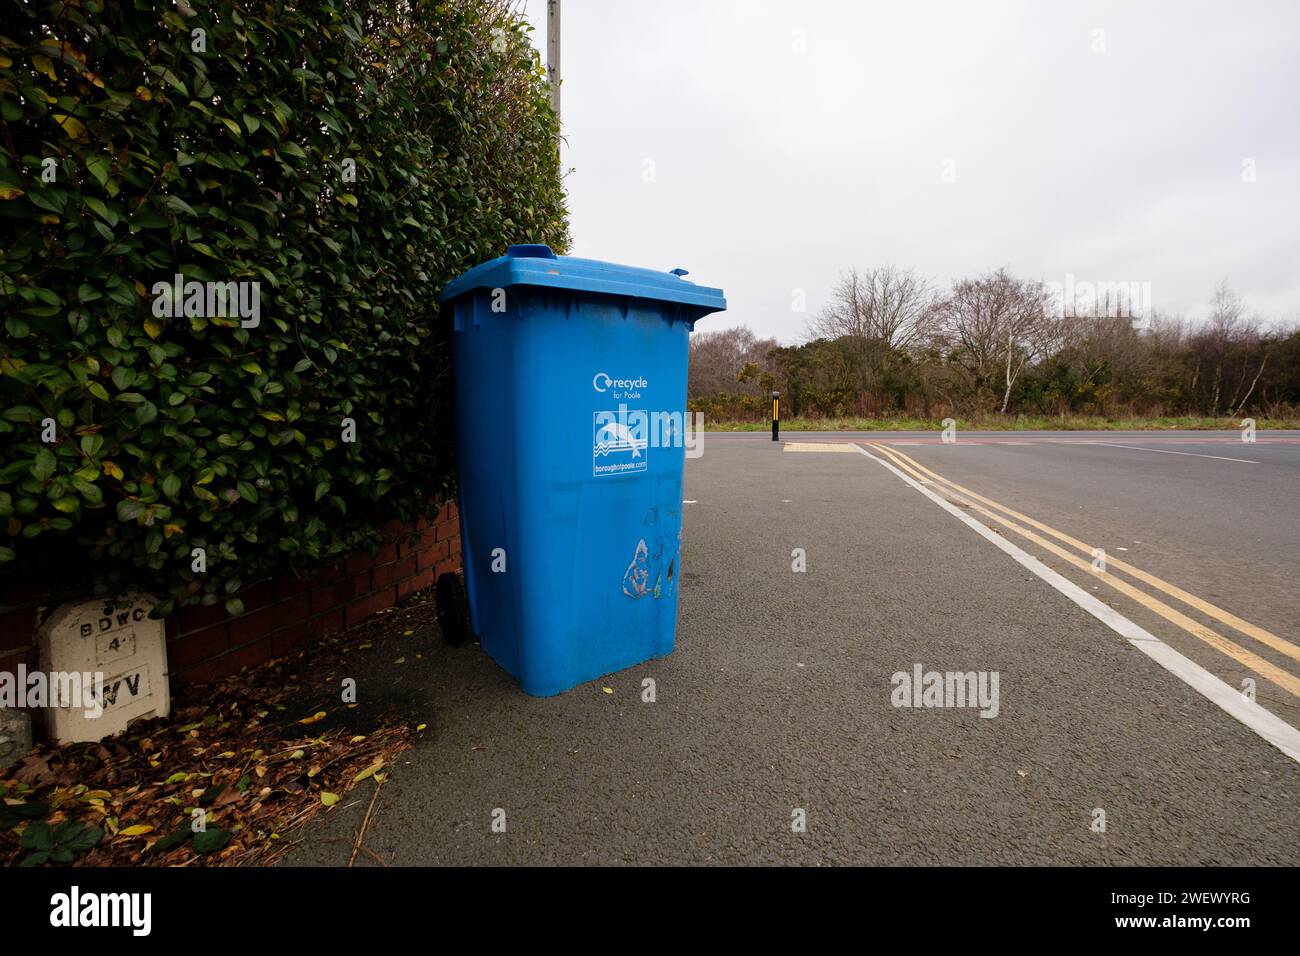 Un bac de collecte de la maison de recyclage bleu du conseil poole laissé sur le trottoir prêt pour la collecte.Dorset Angleterre. Banque D'Images